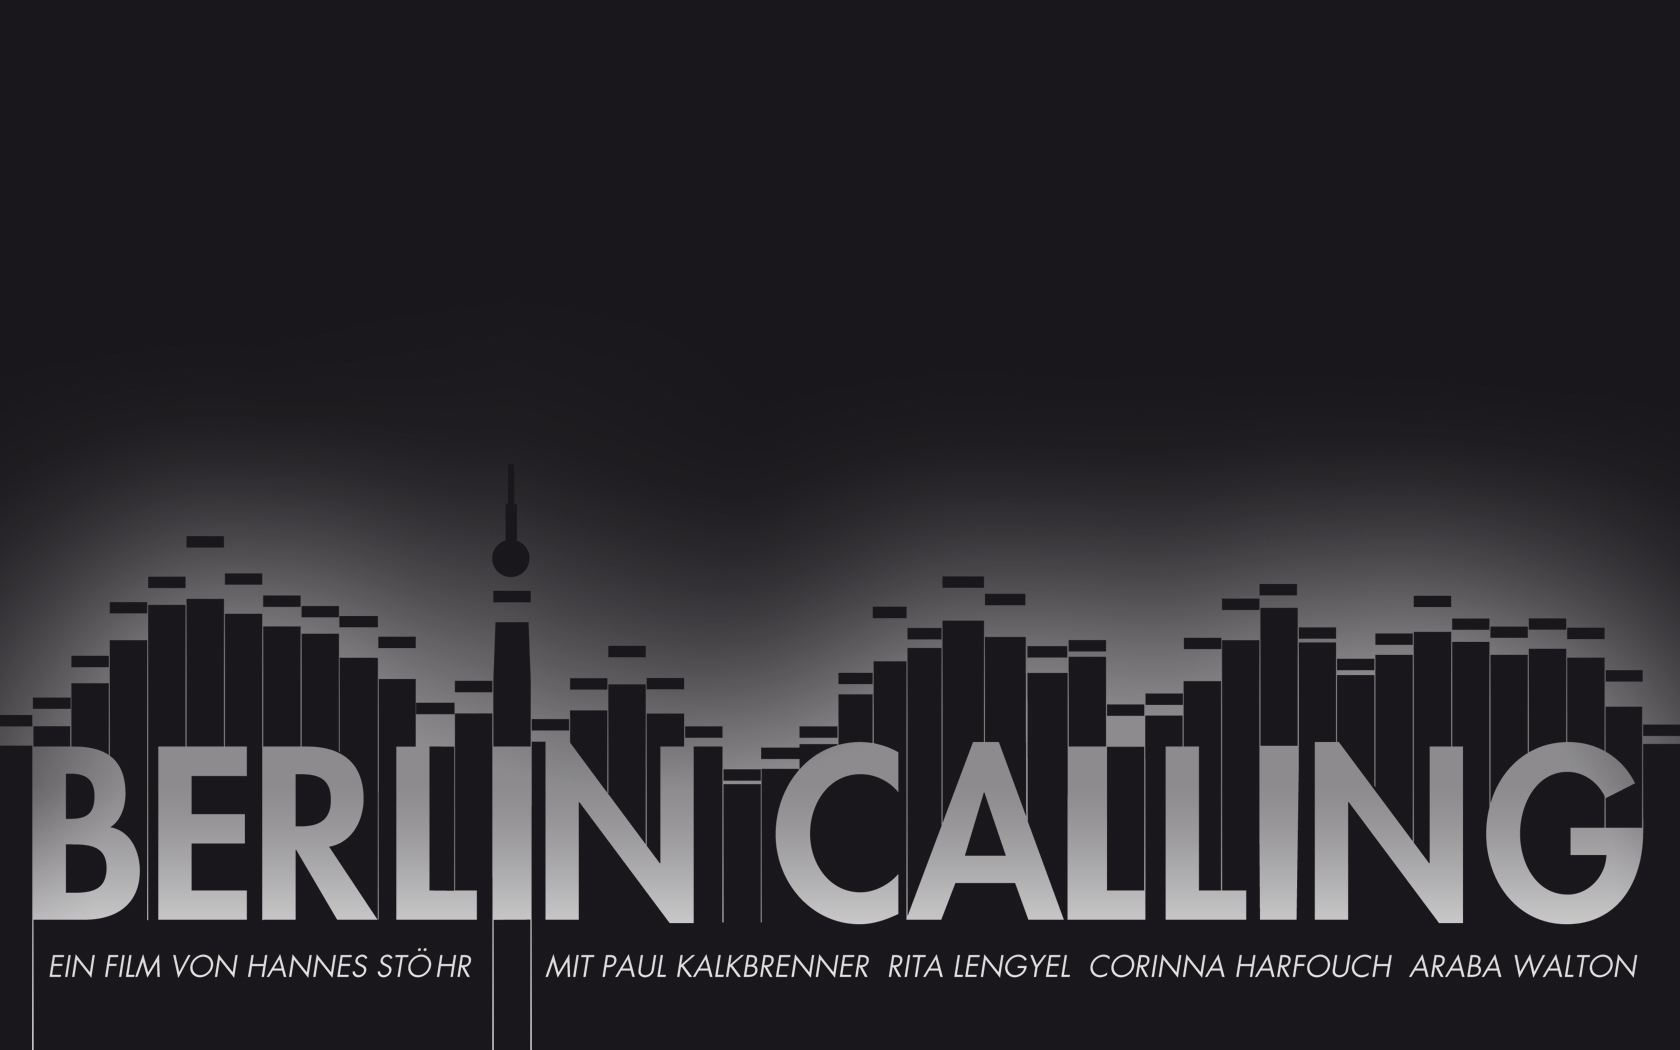 S Berlin Calling